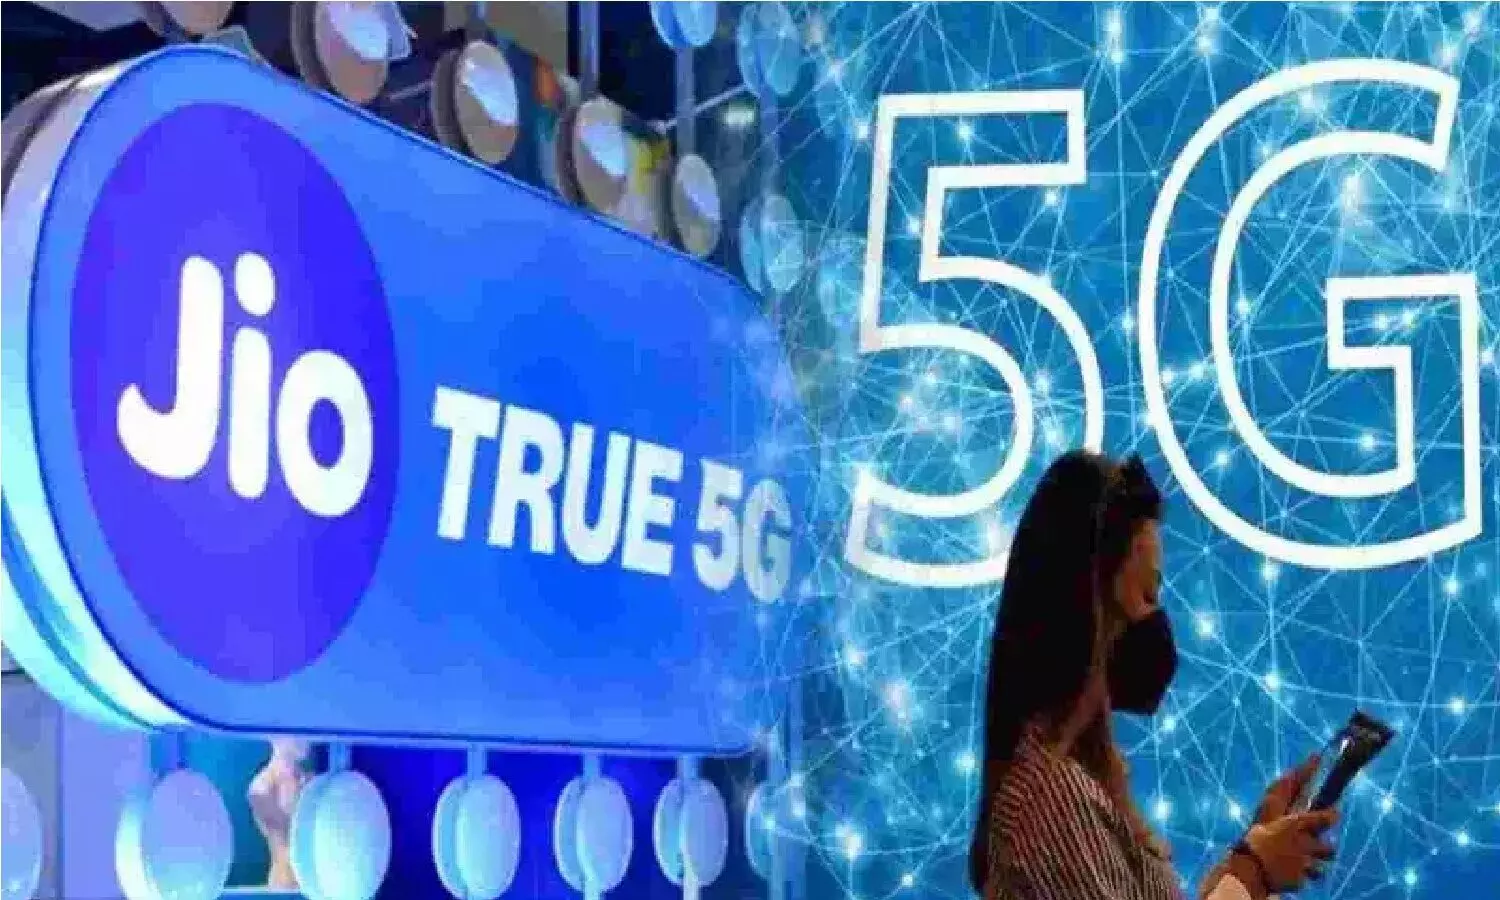 Jio True 5G